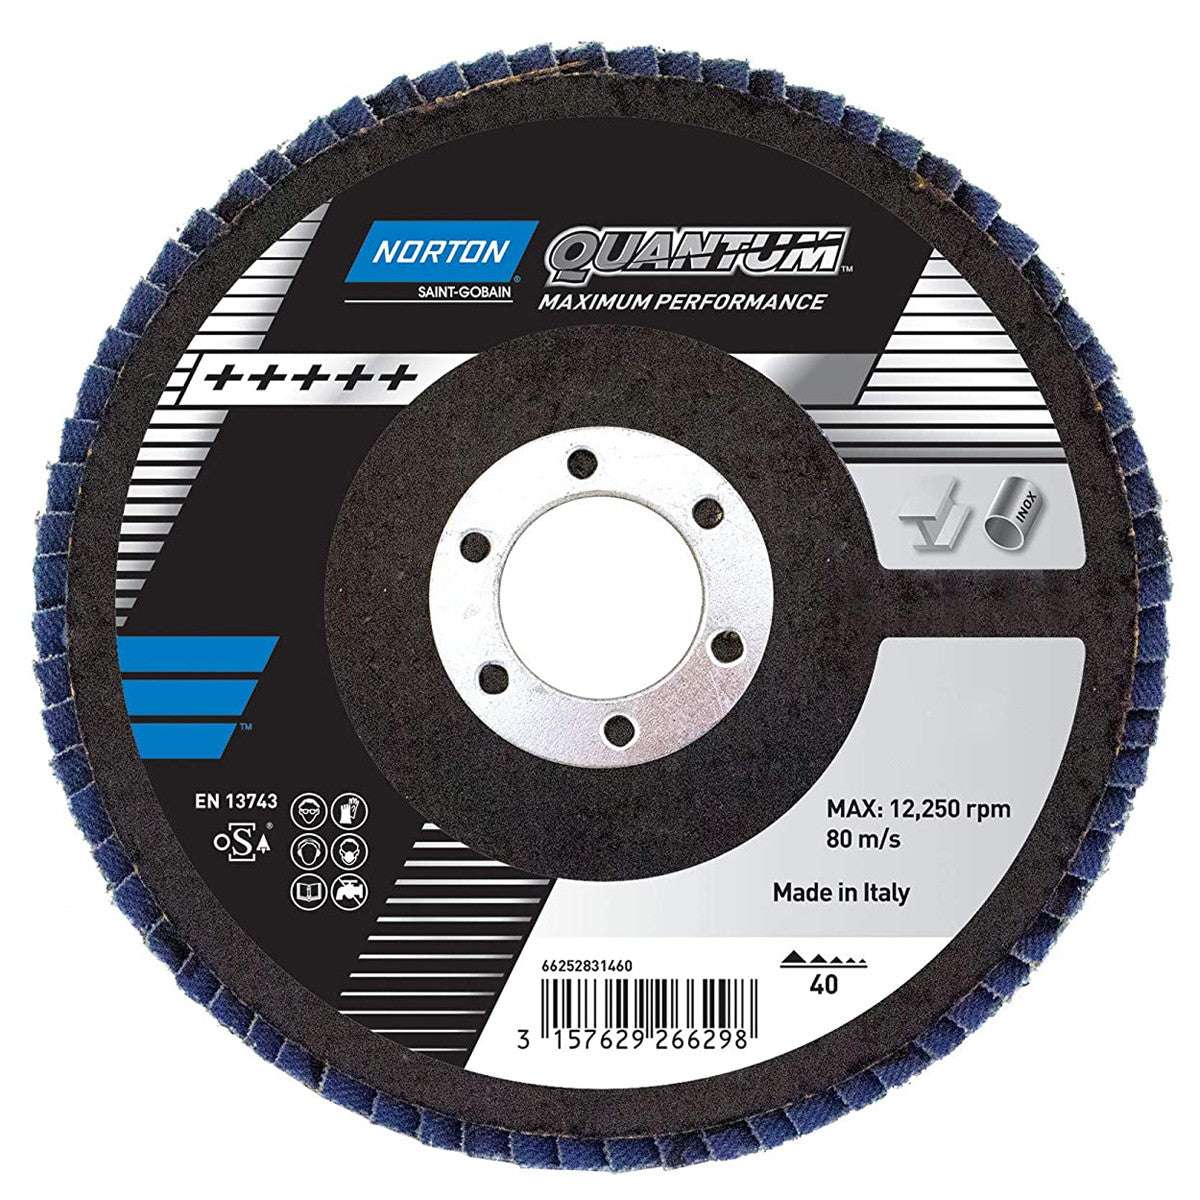 Flat fiber flap disc 115 R996 QUANTUM - Norton